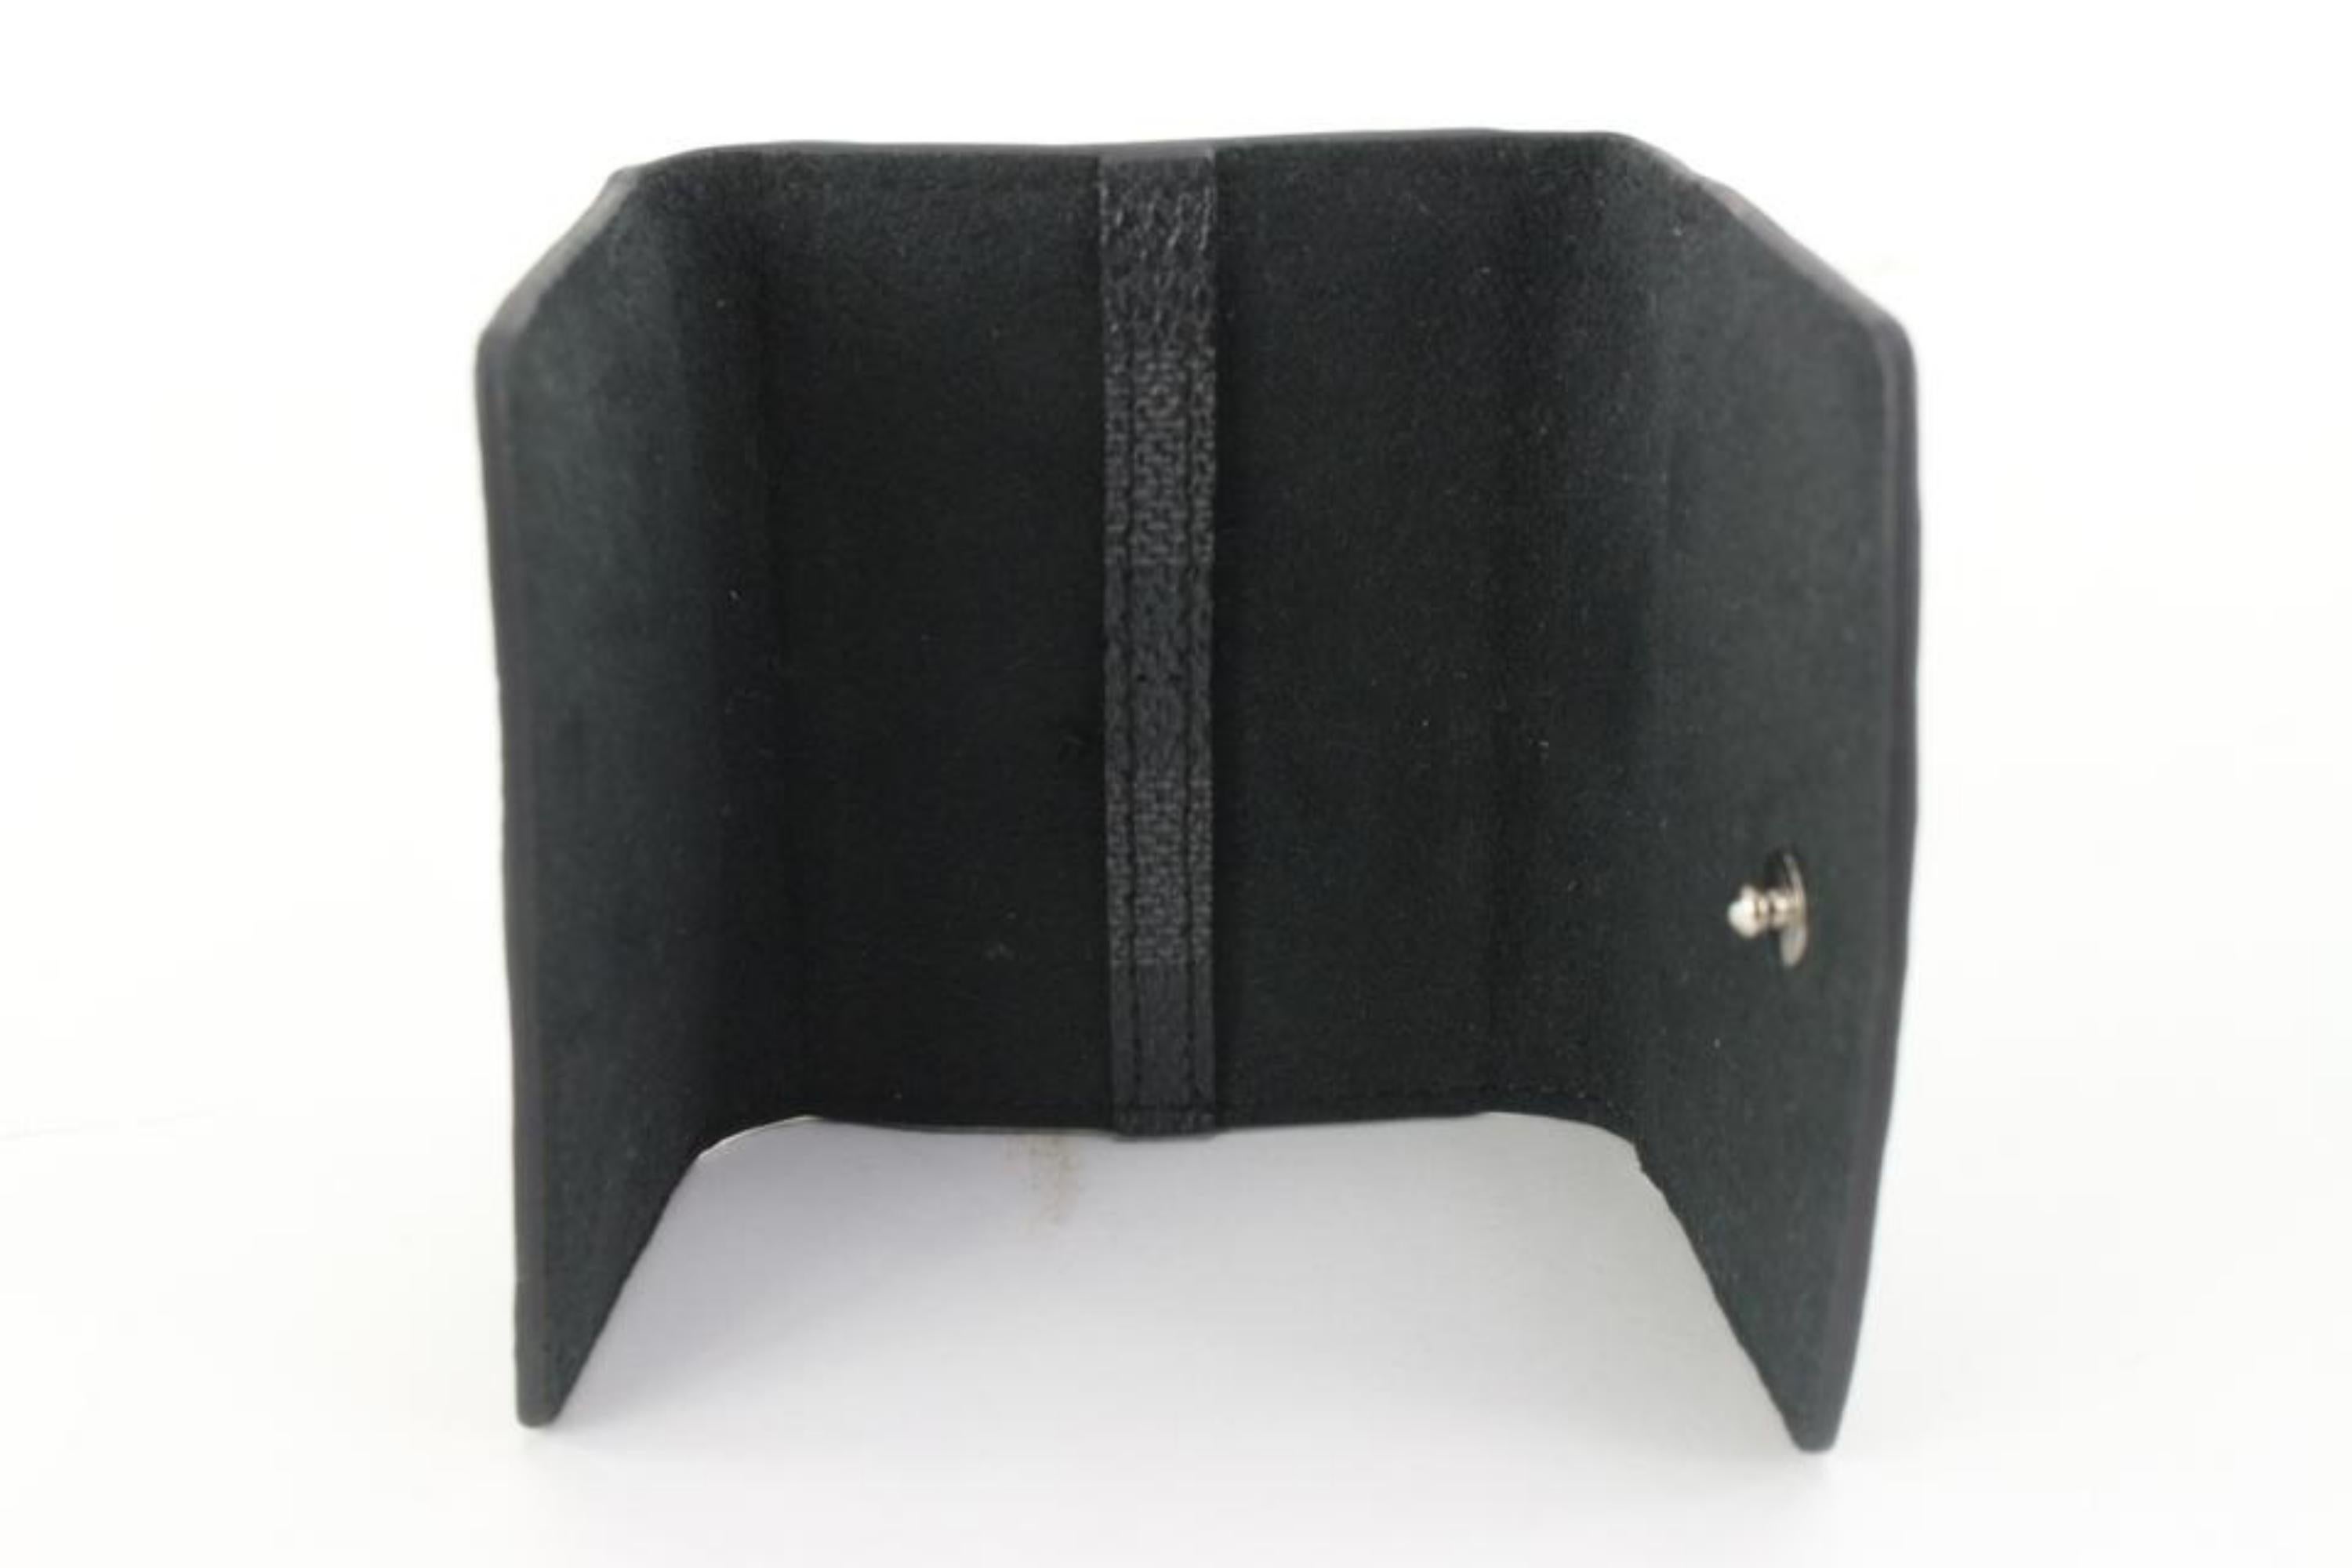 Gray Louis Vuitton Damier Graphite Cufflink Pouch Case Holder 96lk616s For Sale